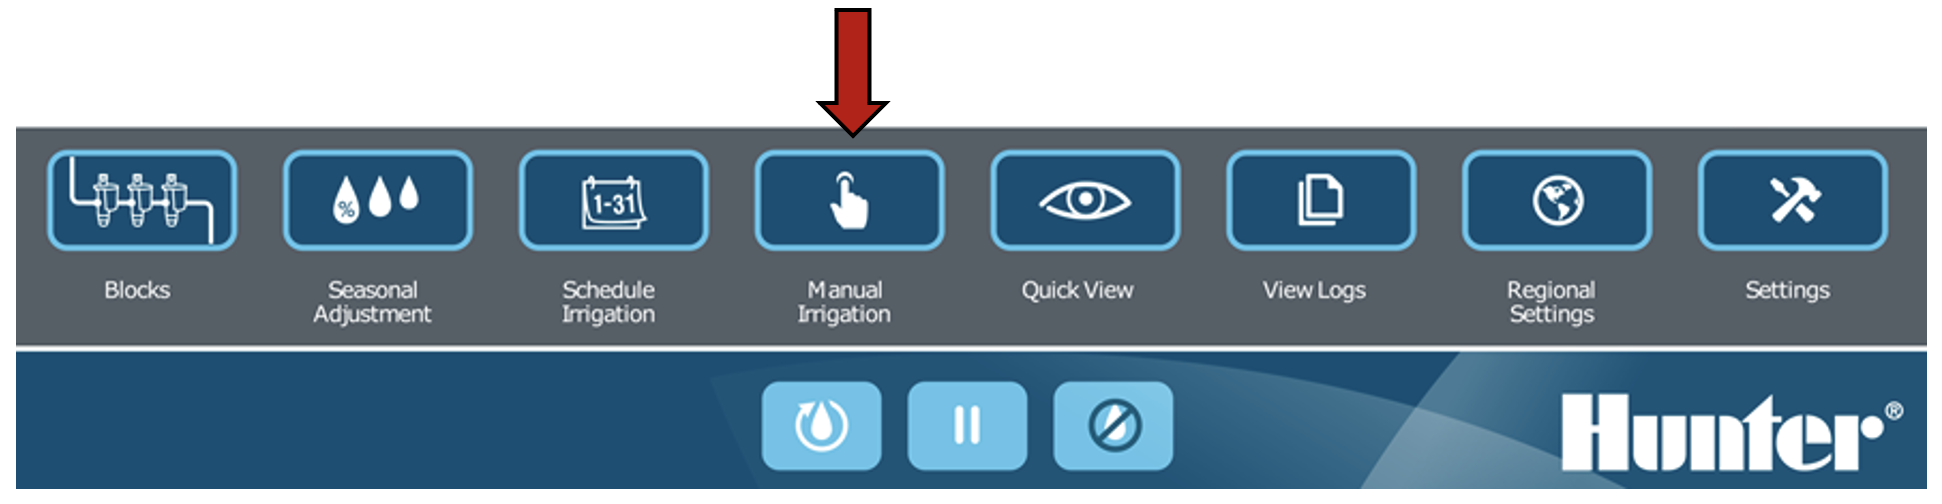 Image de l'interface mettant en évidence le bouton Arrosage manuel.